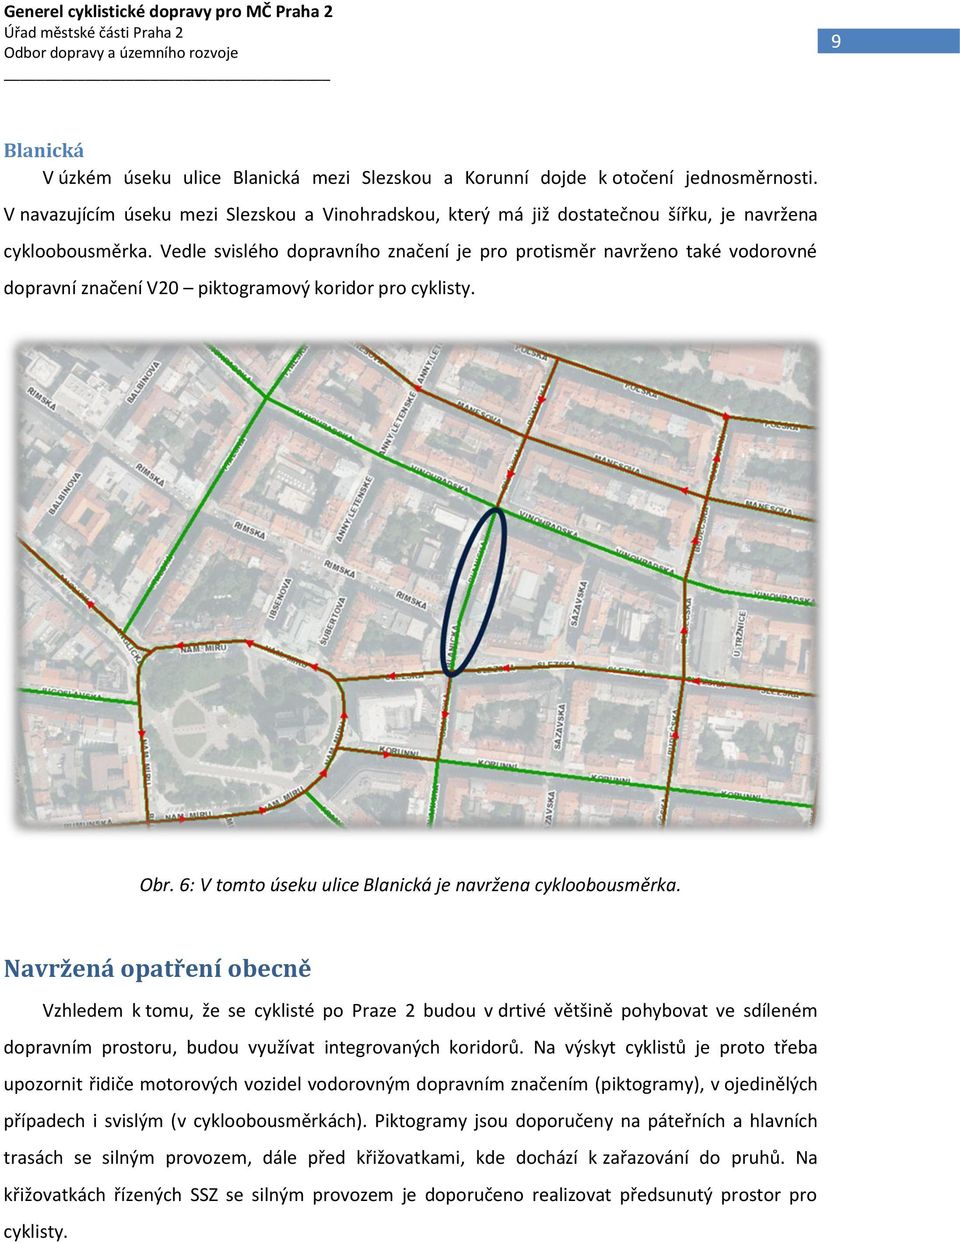 Vedle svislého dopravního značení je pro protisměr navrženo také vodorovné dopravní značení V20 piktogramový koridor pro cyklisty. Obr. 6: V tomto úseku ulice Blanická je navržena cykloobousměrka.